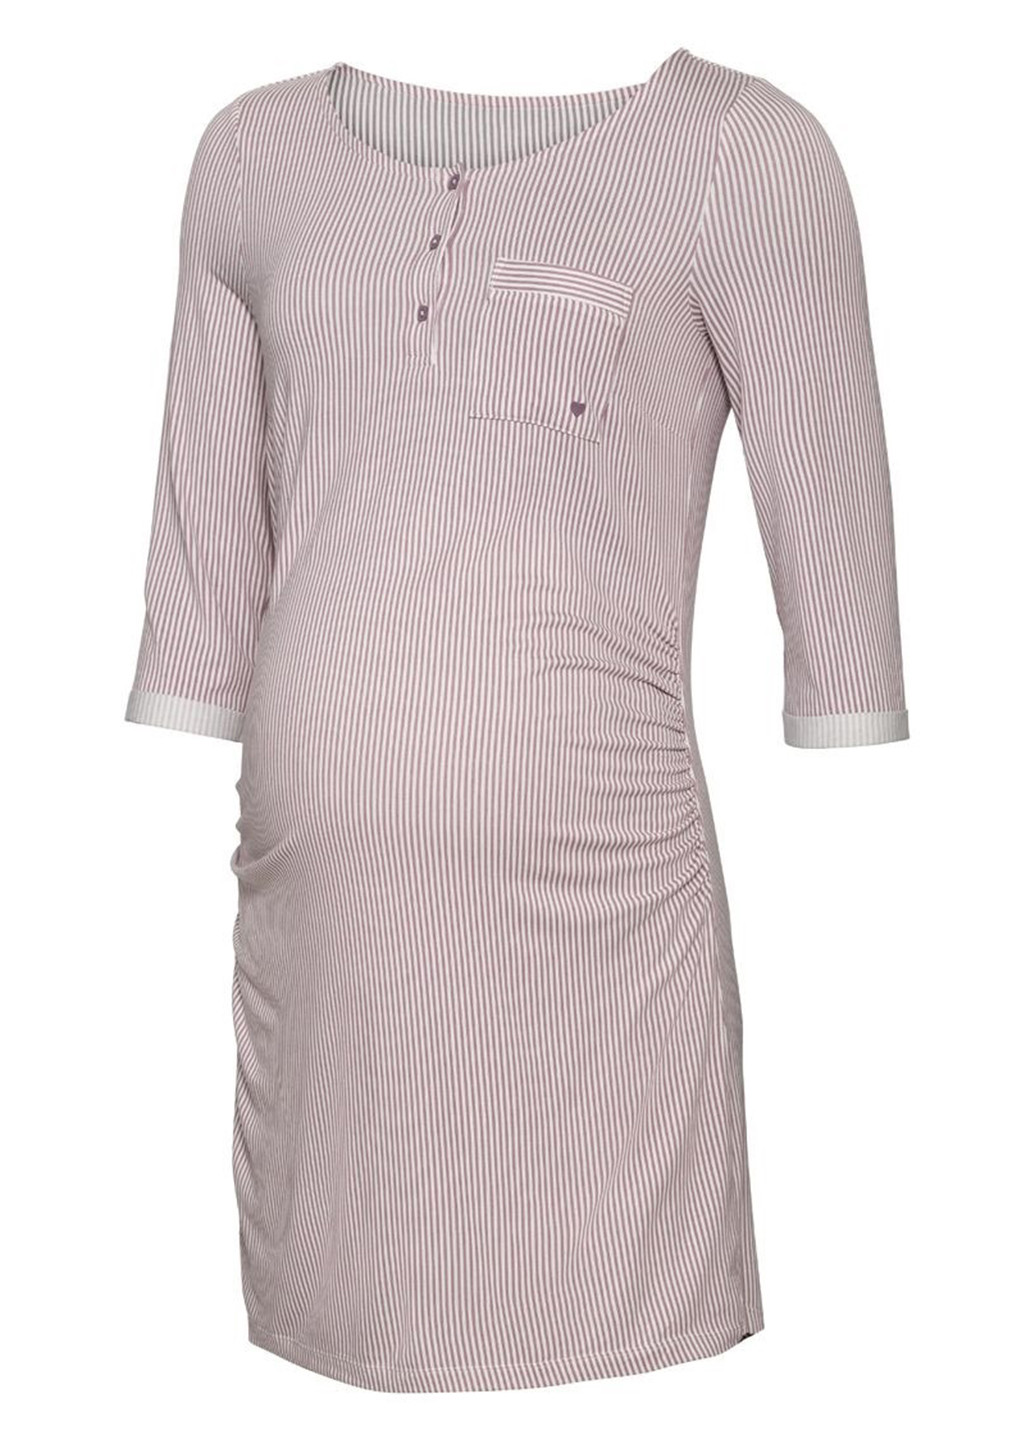 Комбинированное домашнее платье платье-футболка Esmara в полоску